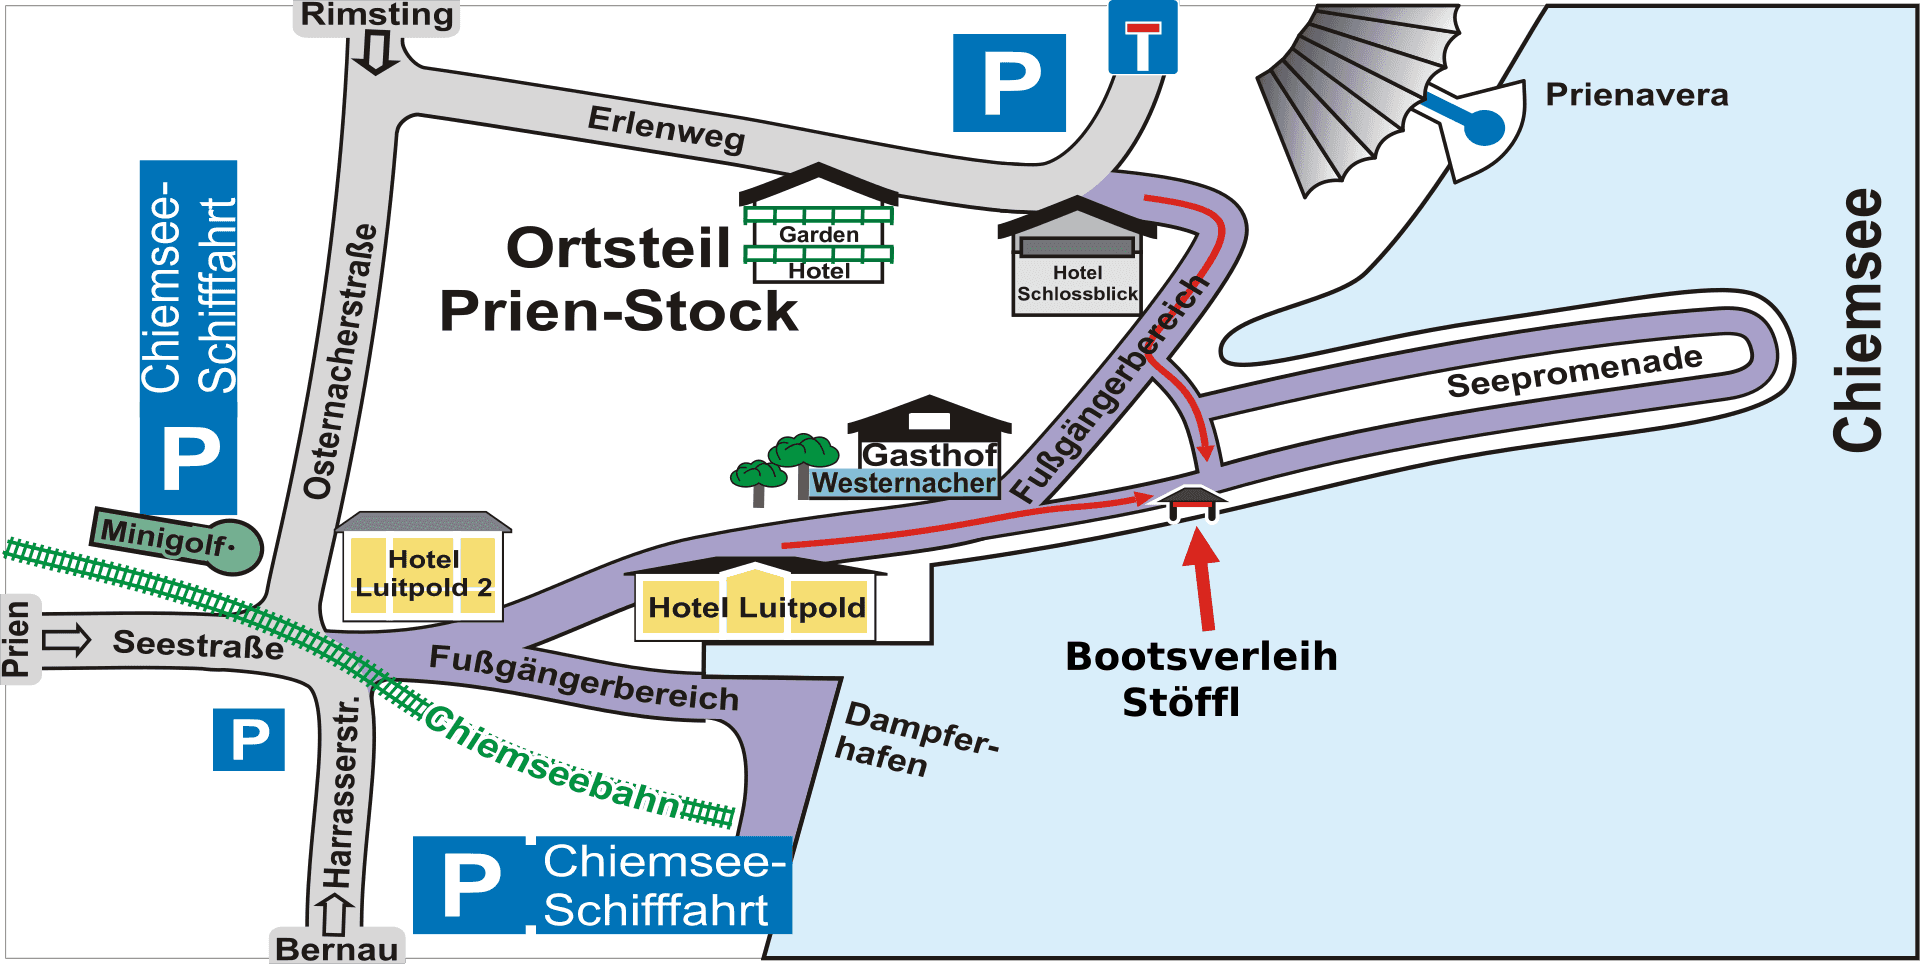 Karte, die den Standort des Bootverleihs Stöffl zeigt